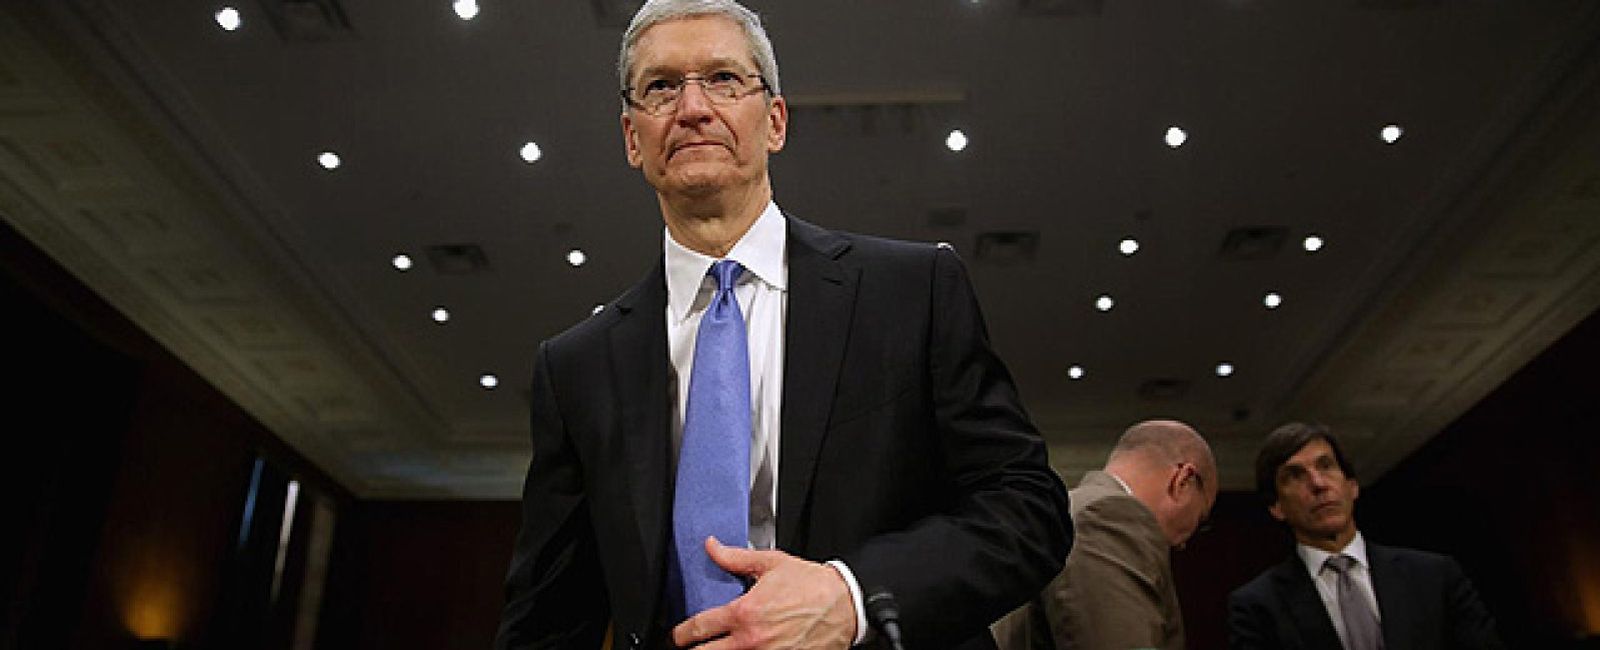 Foto: iBooks, la idea que rechazó Jobs y podría costarle millones a Apple